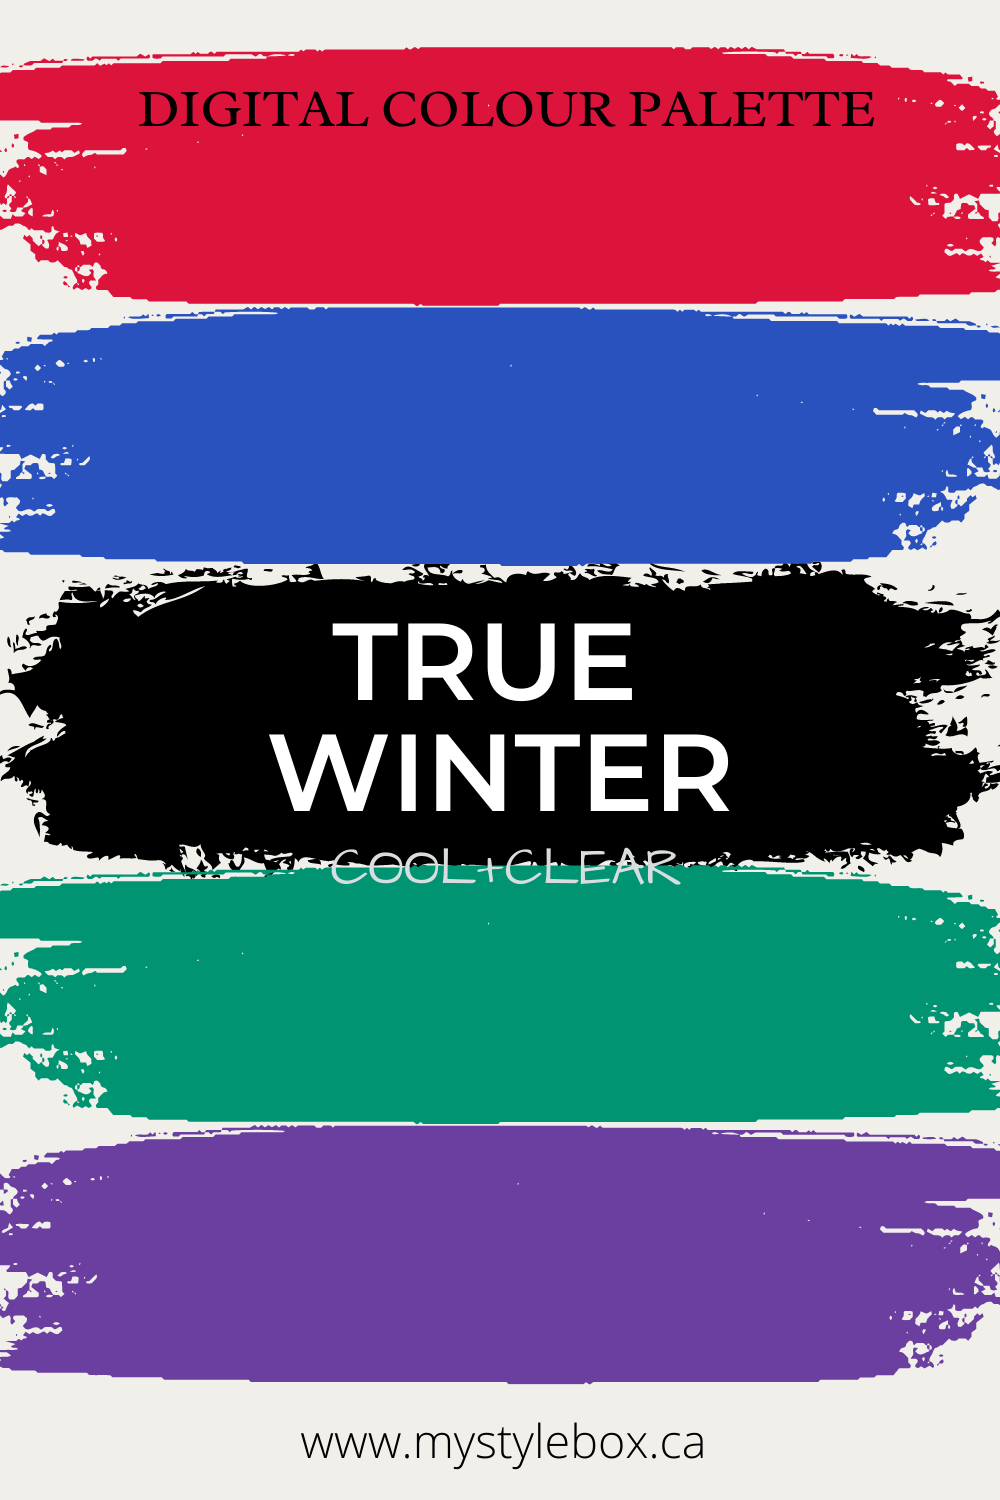 True Winter Digital Colour Palette